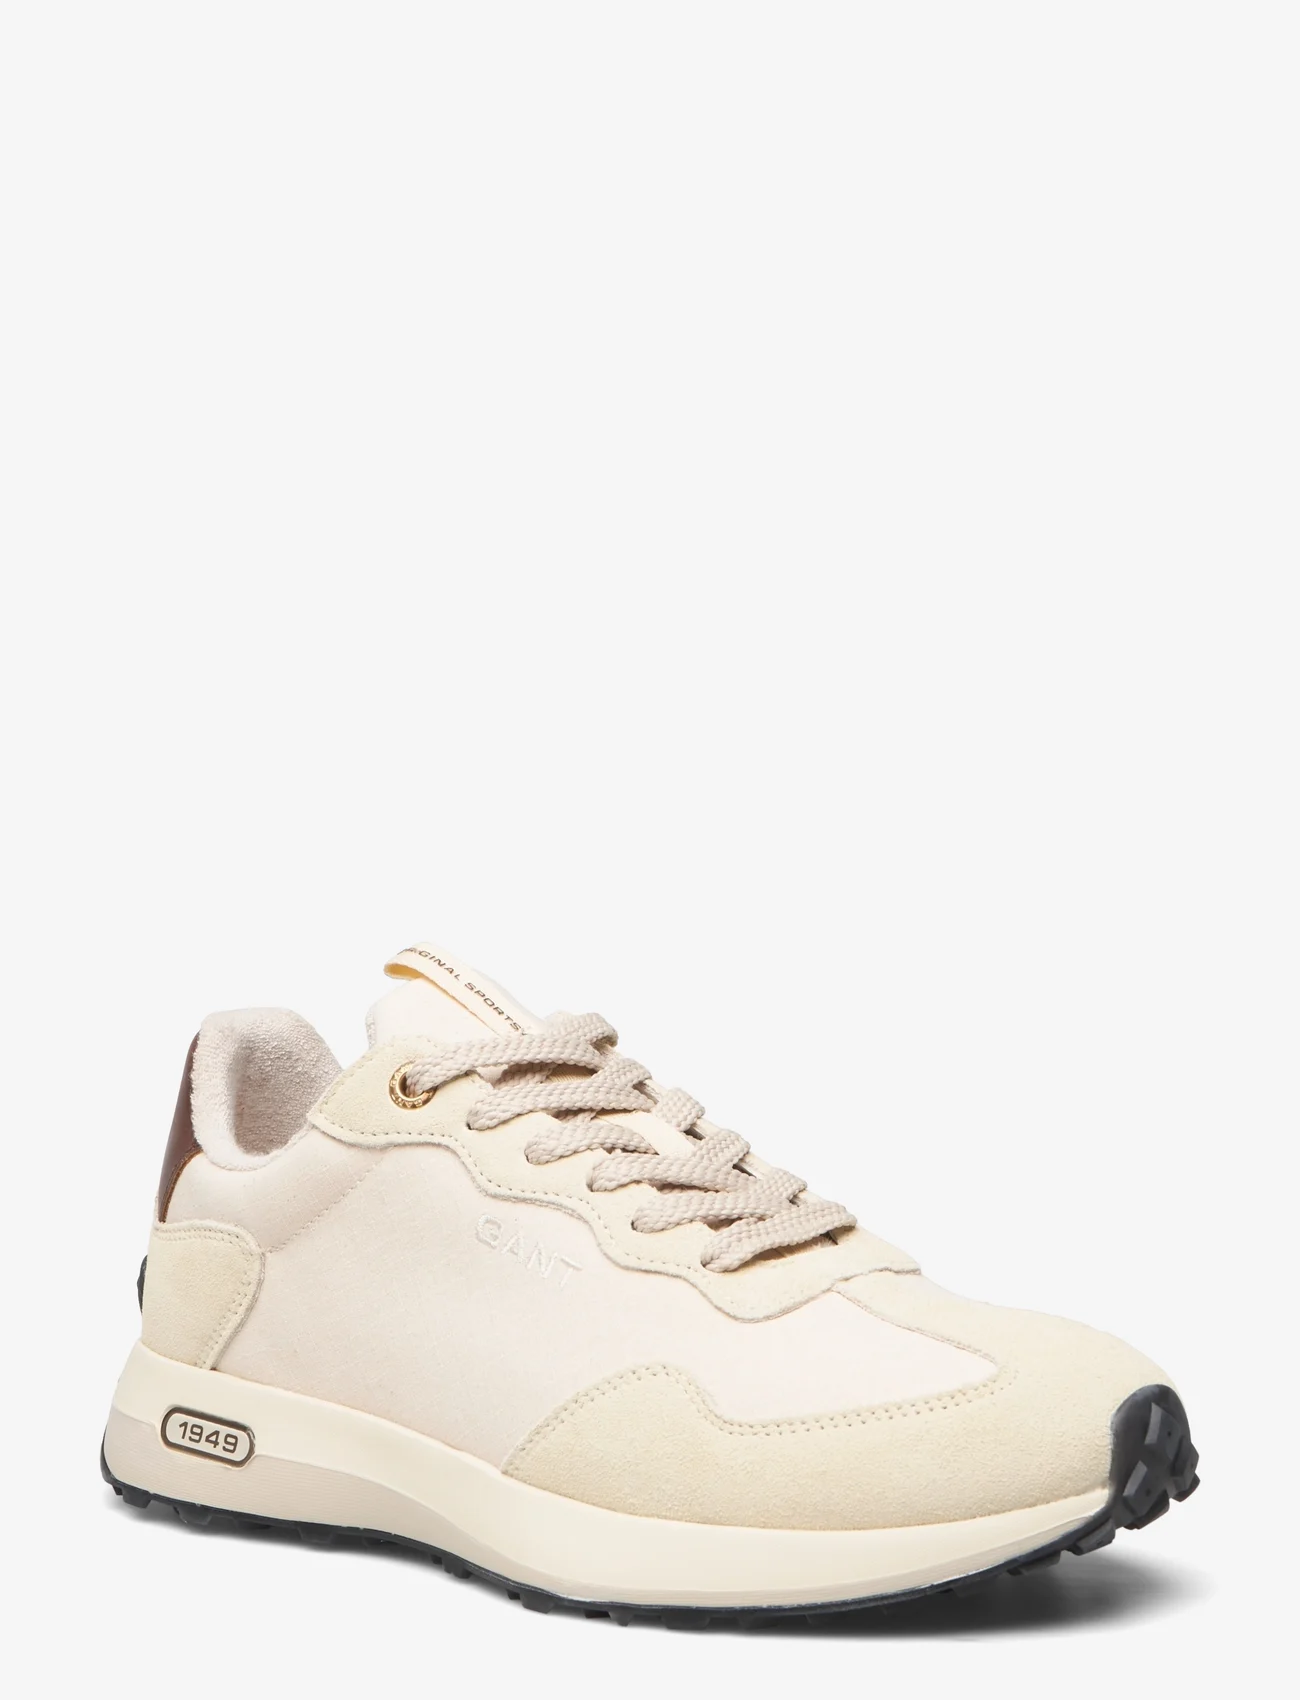 GANT - Ketoon Sneaker - lave sneakers - beige/earth - 0